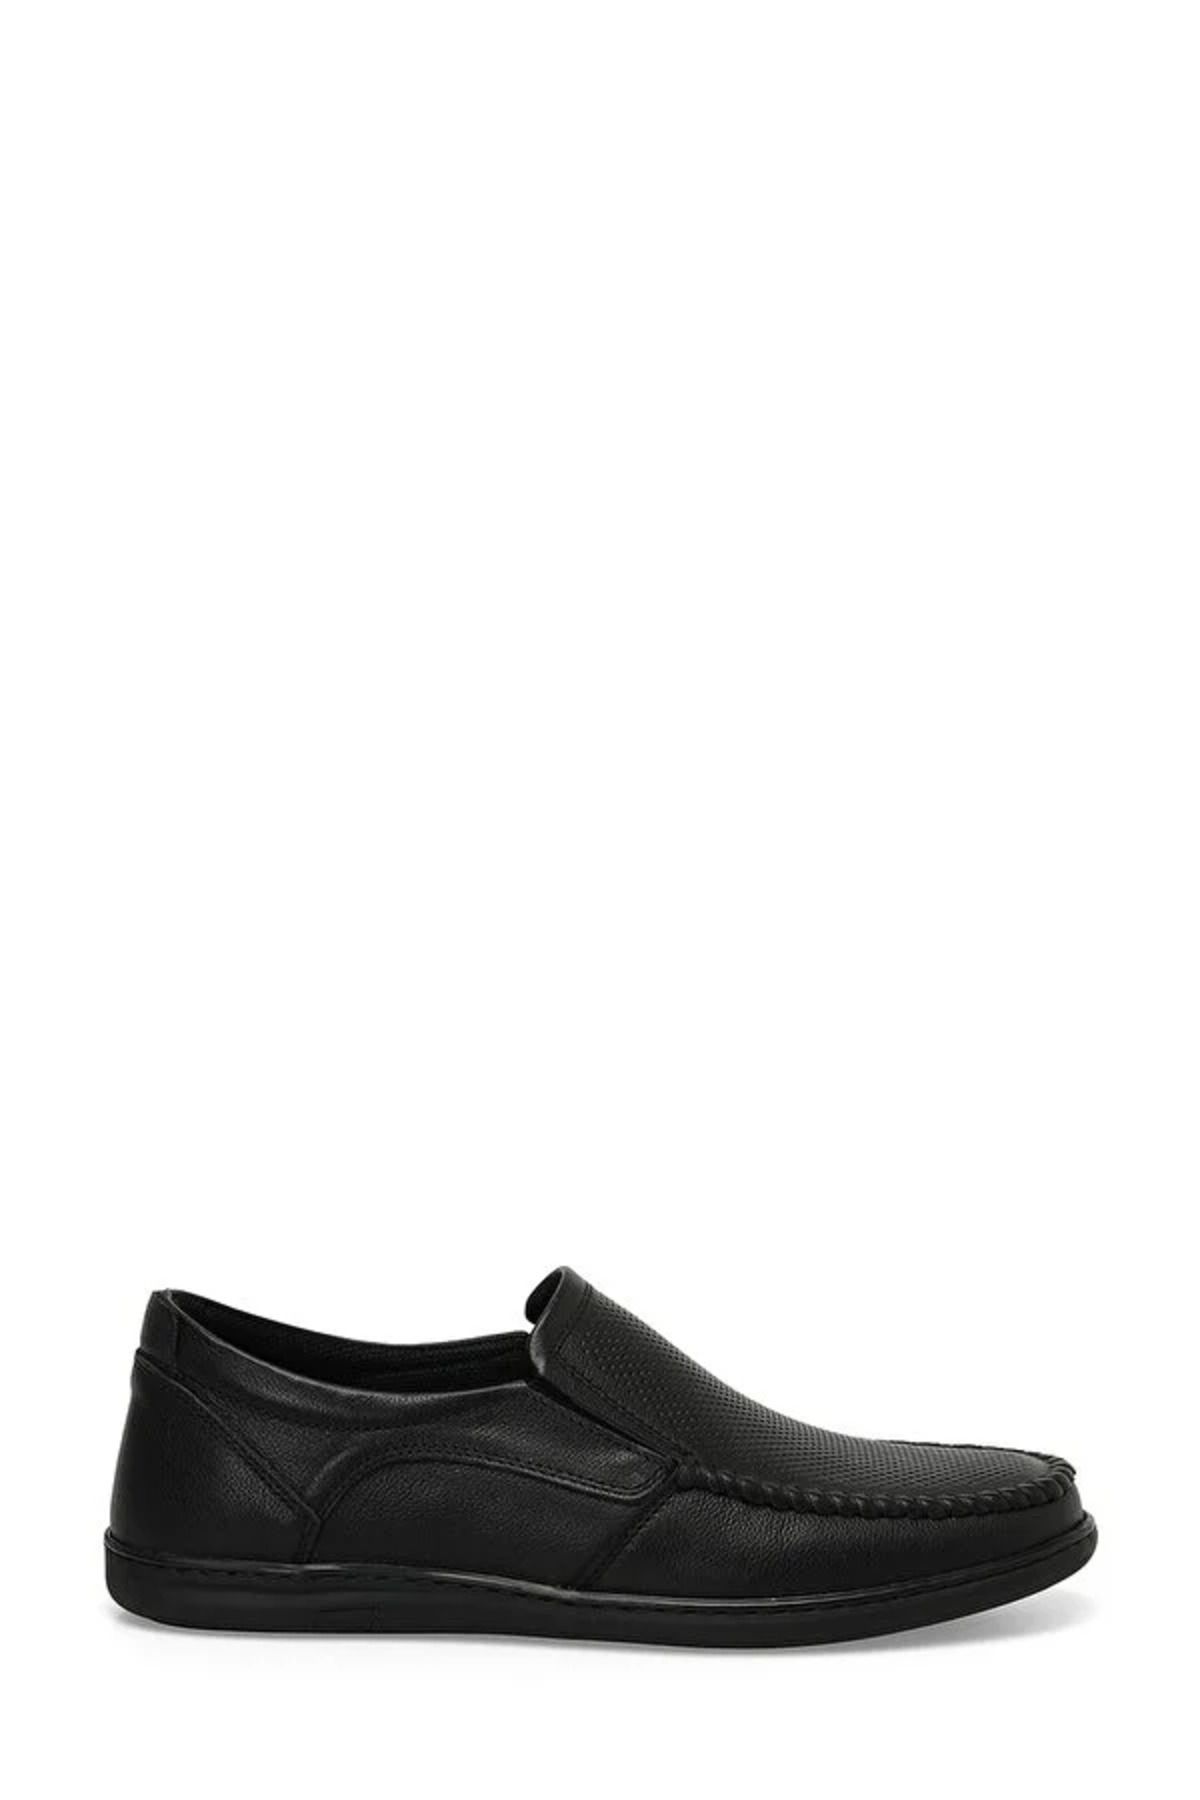 Polaris Erkek Klasik Ayakkabı Siyah 104197.m 4fx